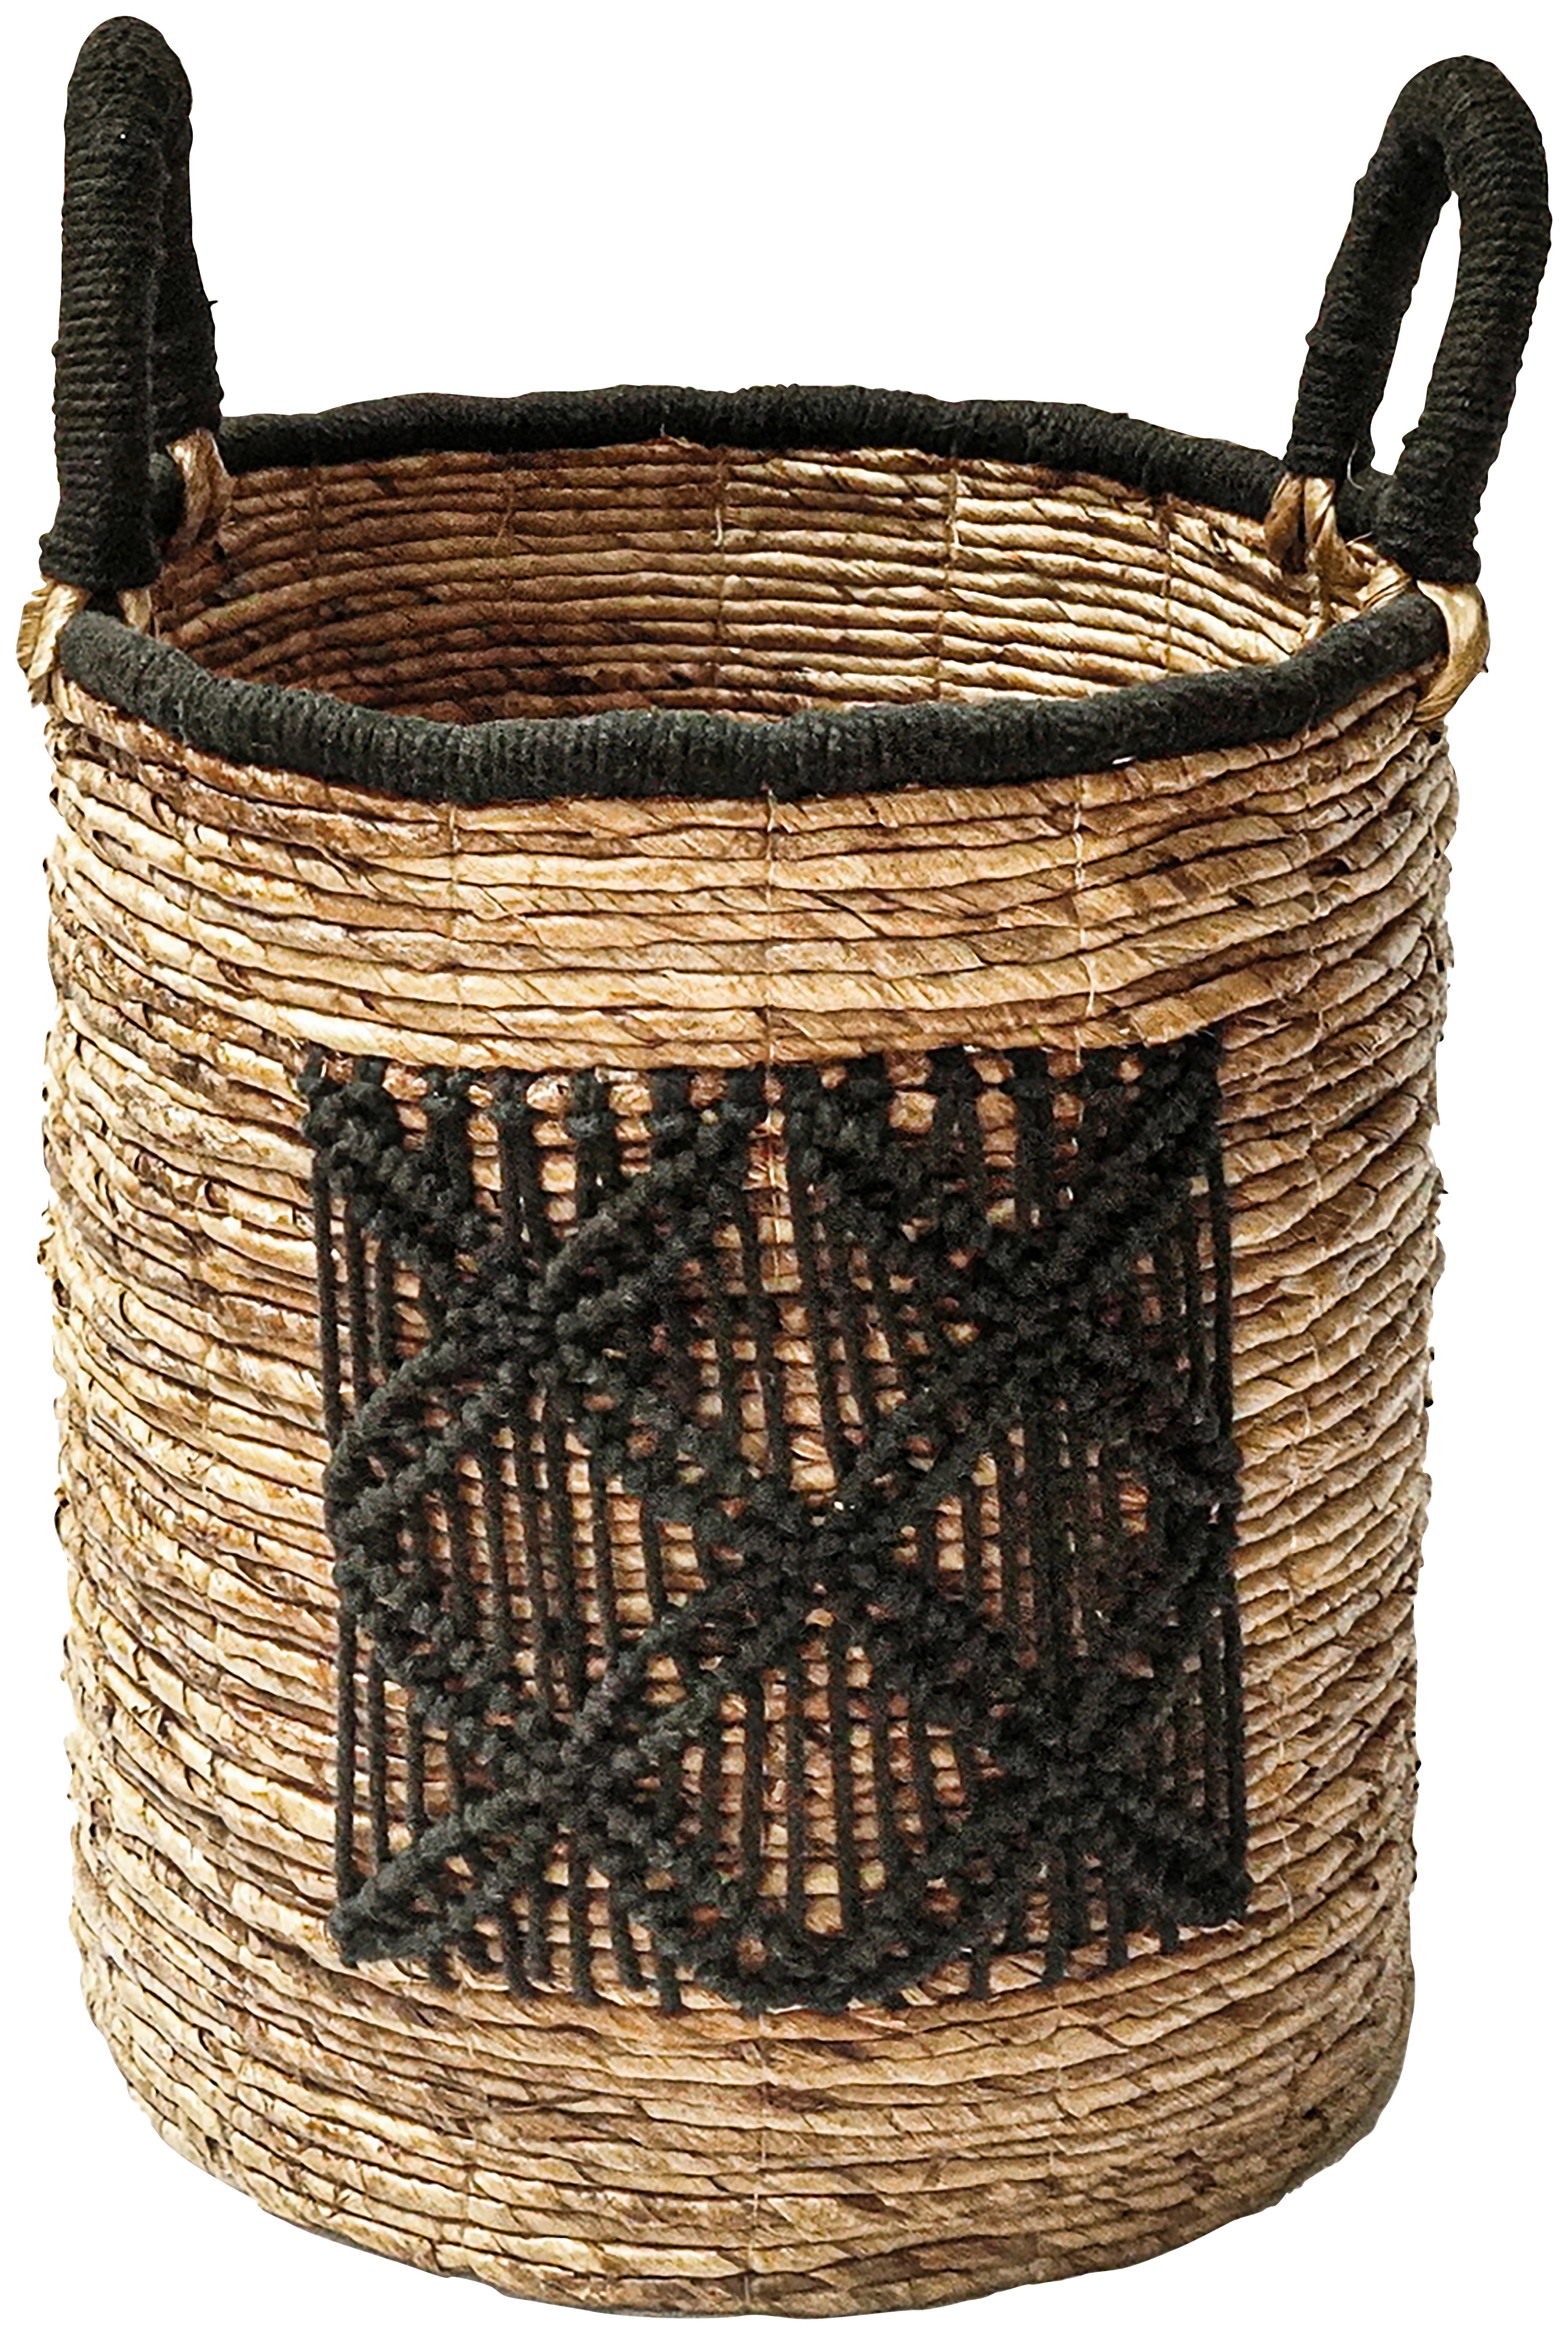 Košík Yuna, 41/45-55 Cm - prírodné farby/čierna, Moderný, textil/prírodné materiály (41/45-55cm) - Premium Living